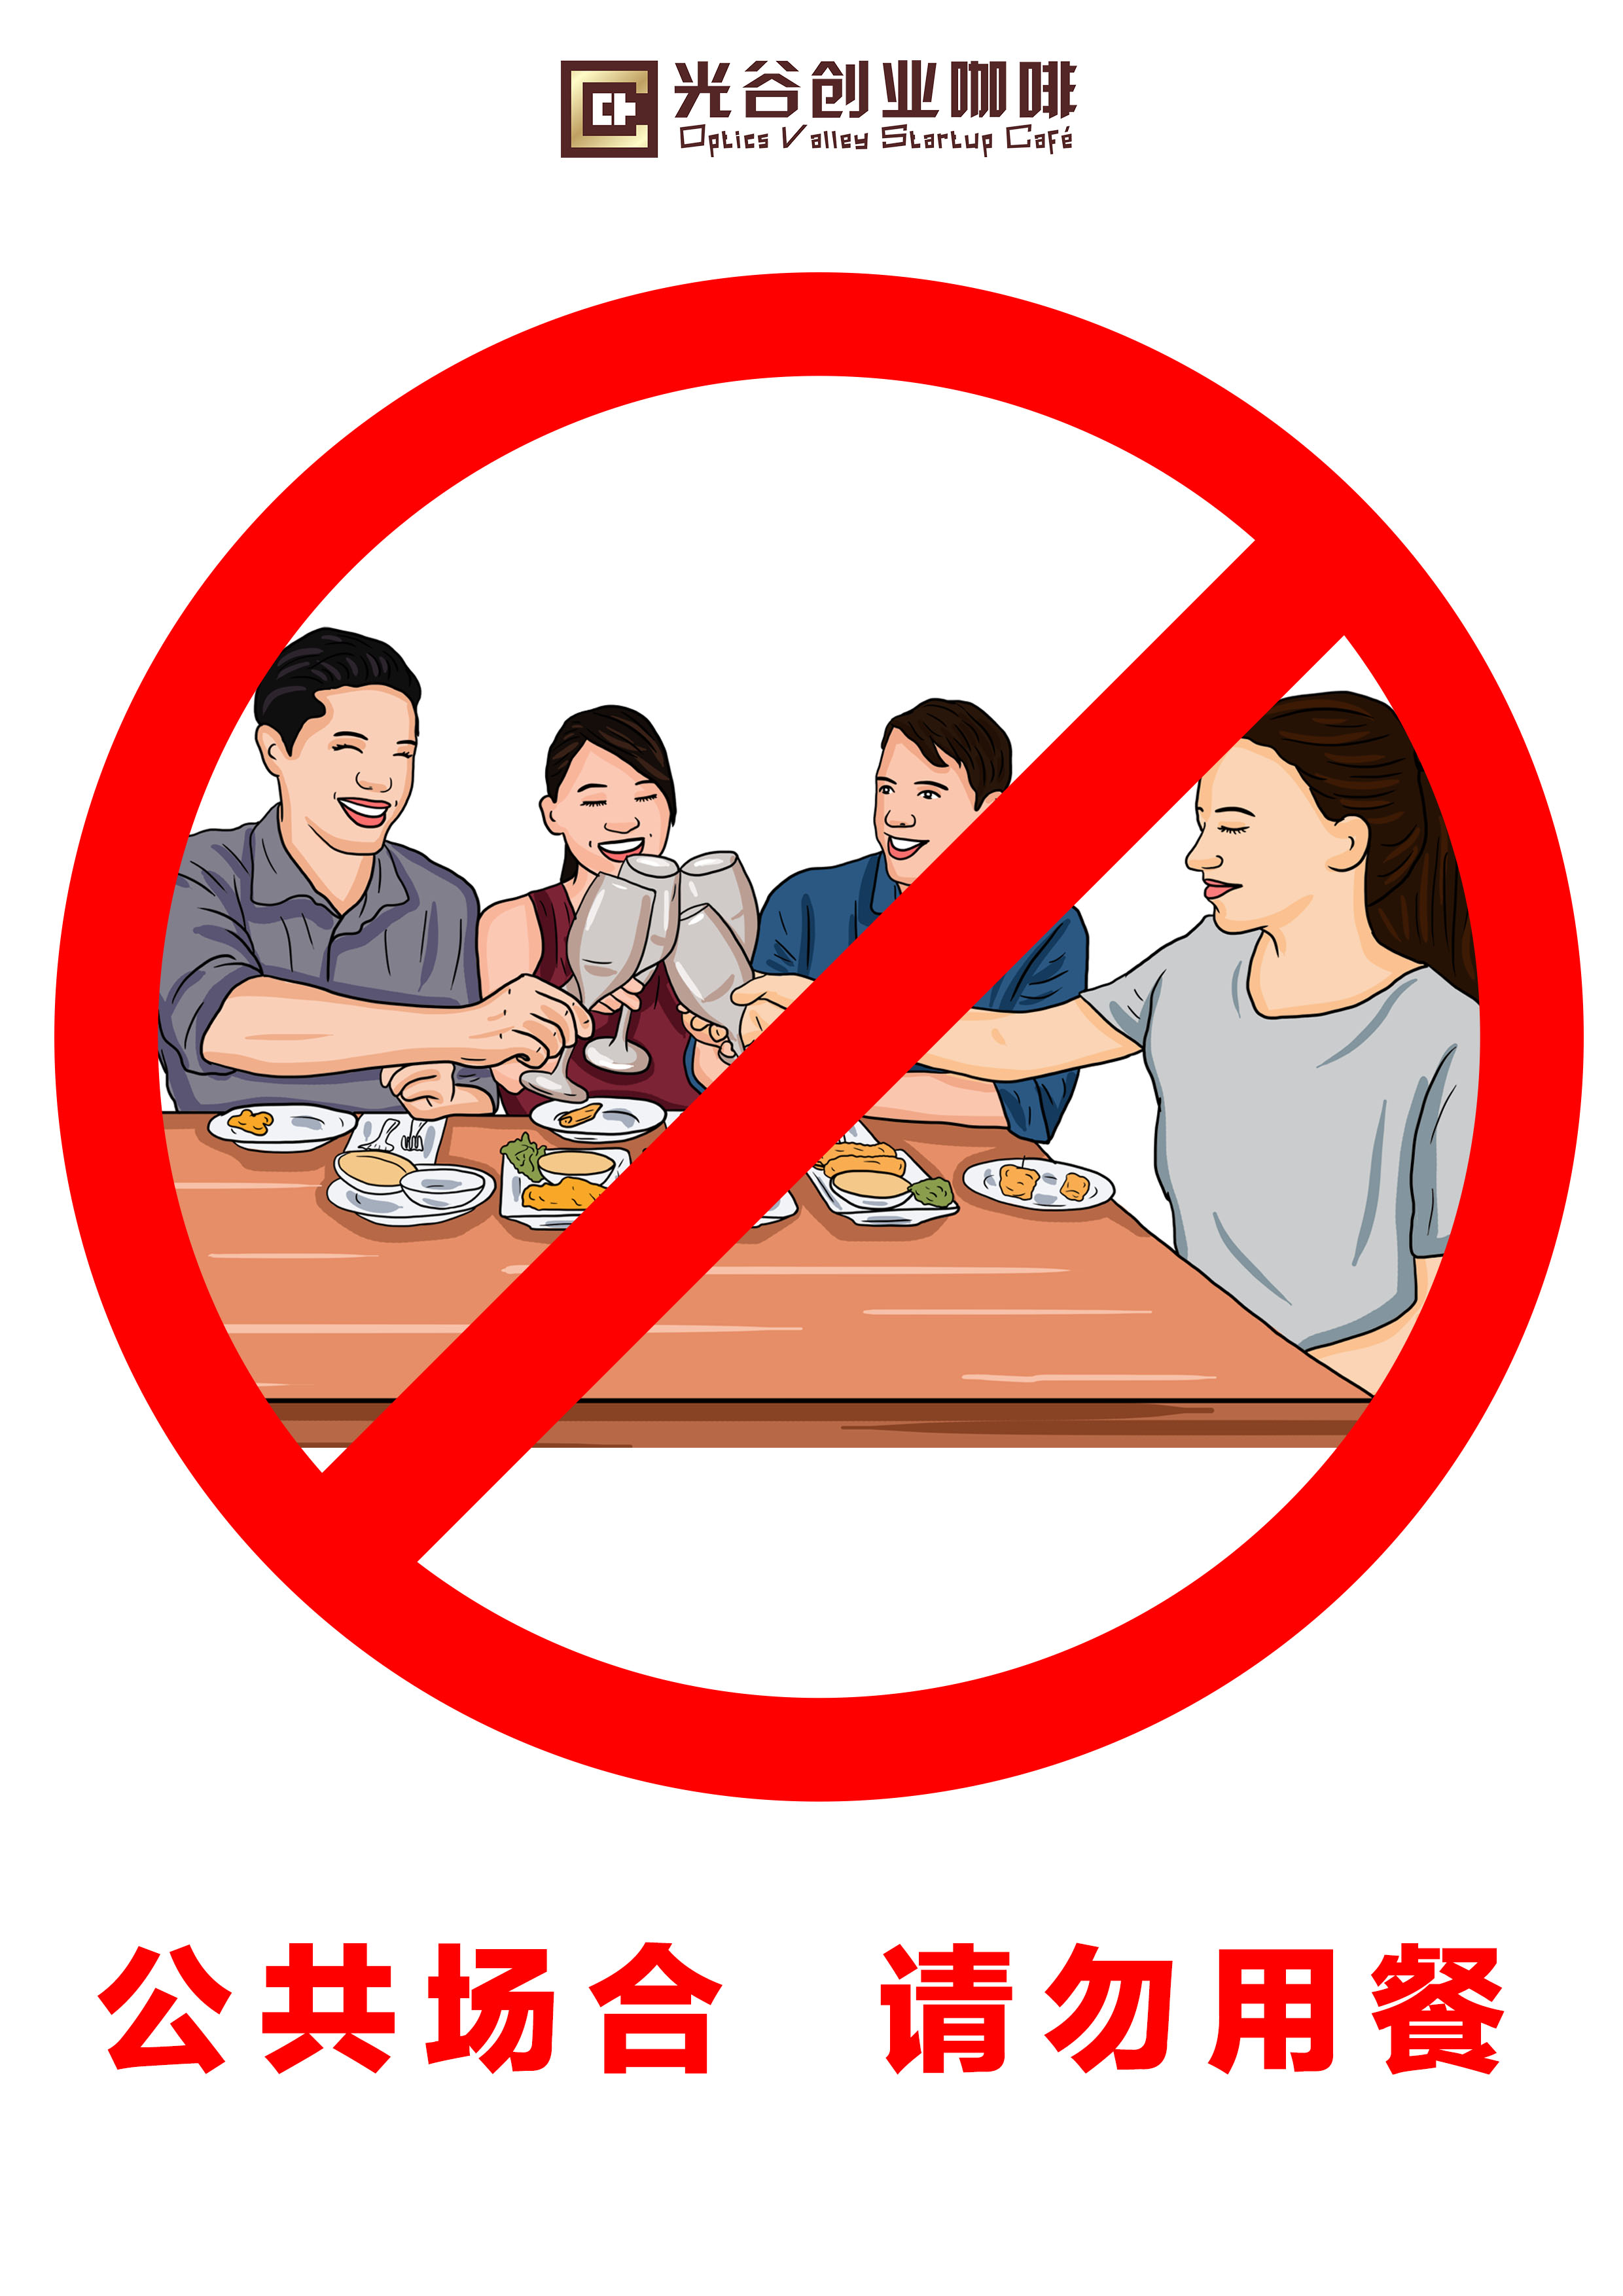 禁止堂食图片打印图片